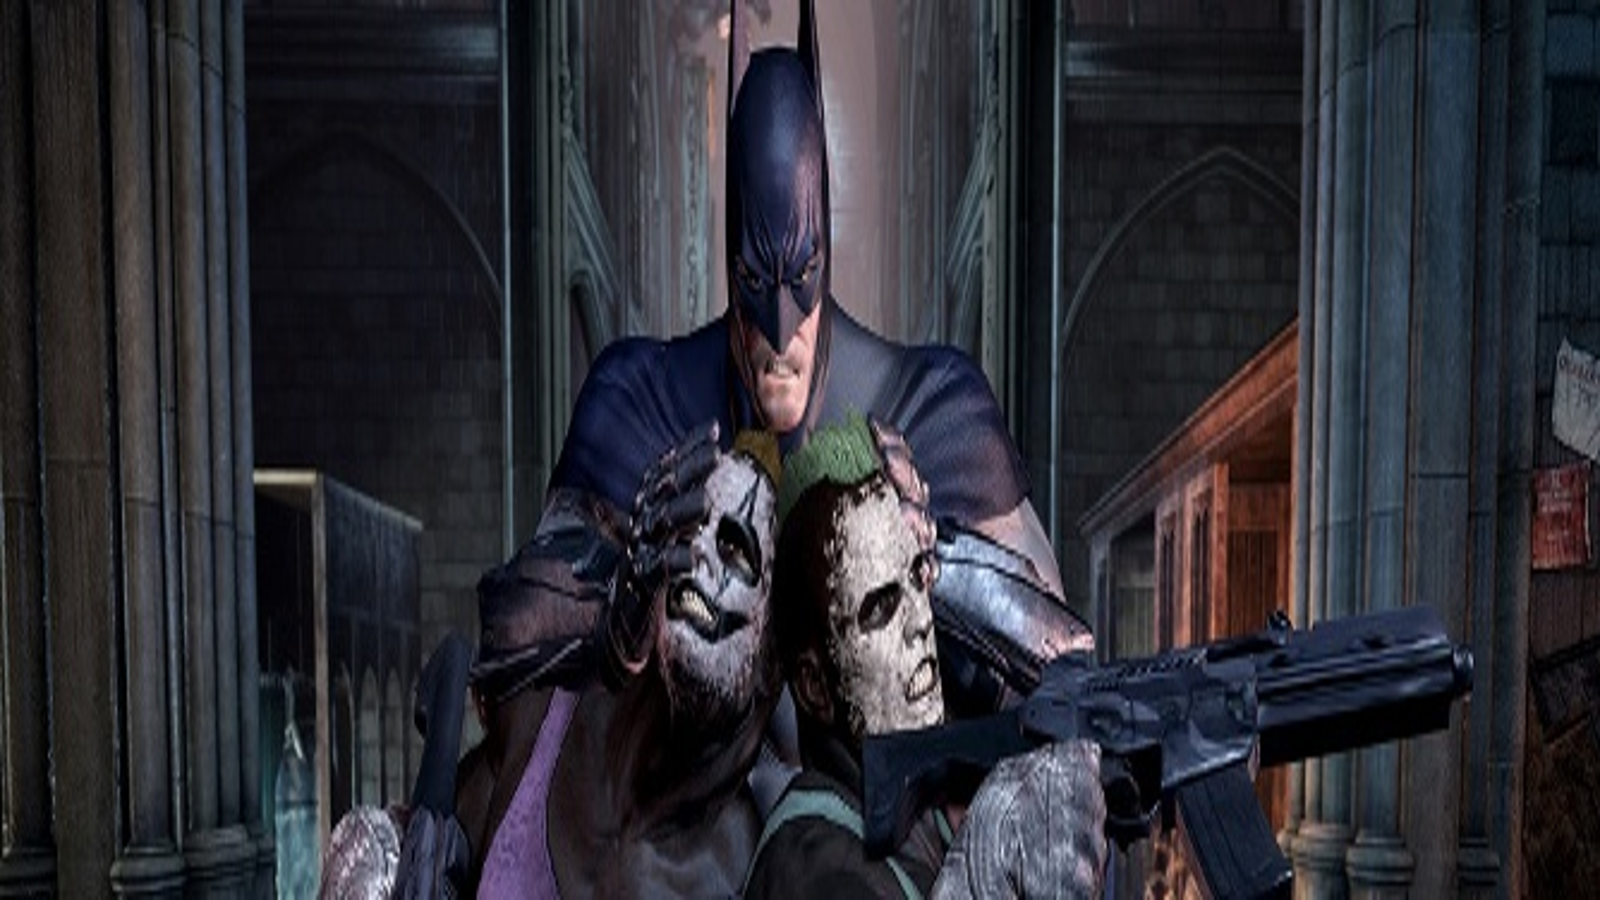 Batman: Arkham City achievements have been leaked | VG247